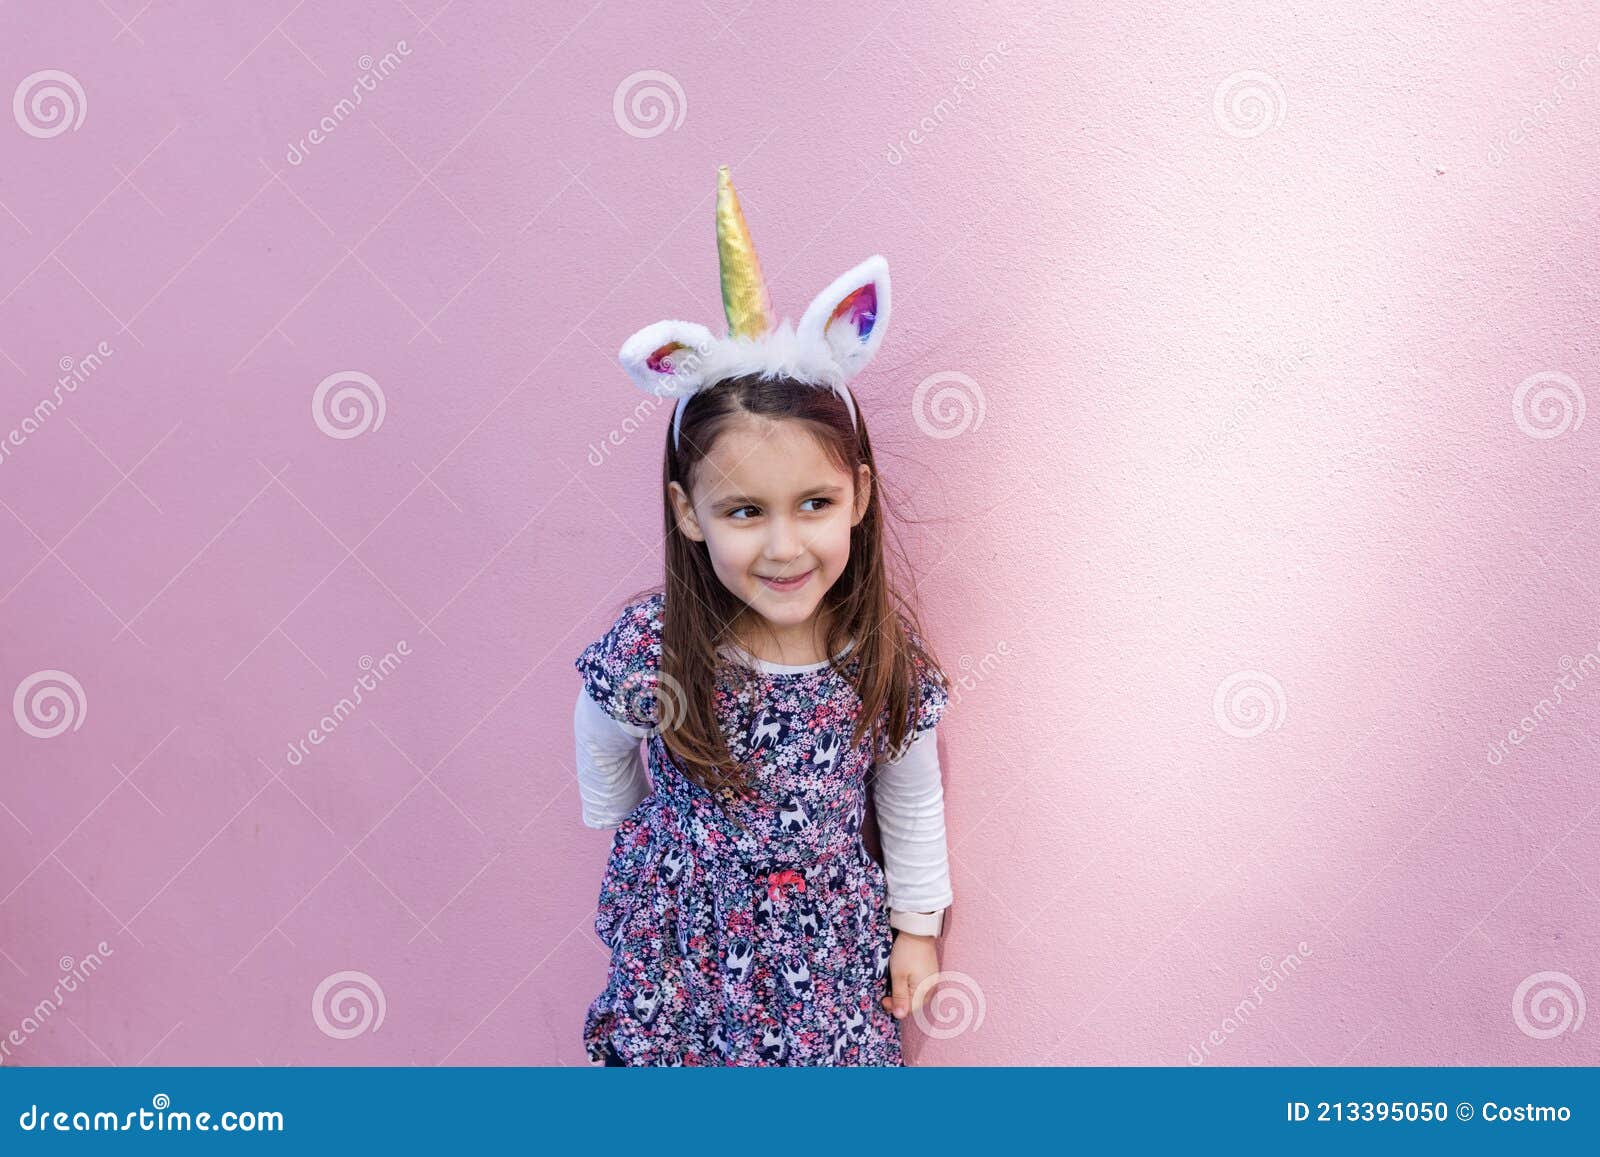 https://thumbs.dreamstime.com/z/adorable-ni%C3%B1a-con-una-diadema-unicornio-fondo-rosa-vista-de-feliz-usando-retrato-ni%C3%B1o-lindo-sonriente-cuerno-y-orejas-en-la-213395050.jpg